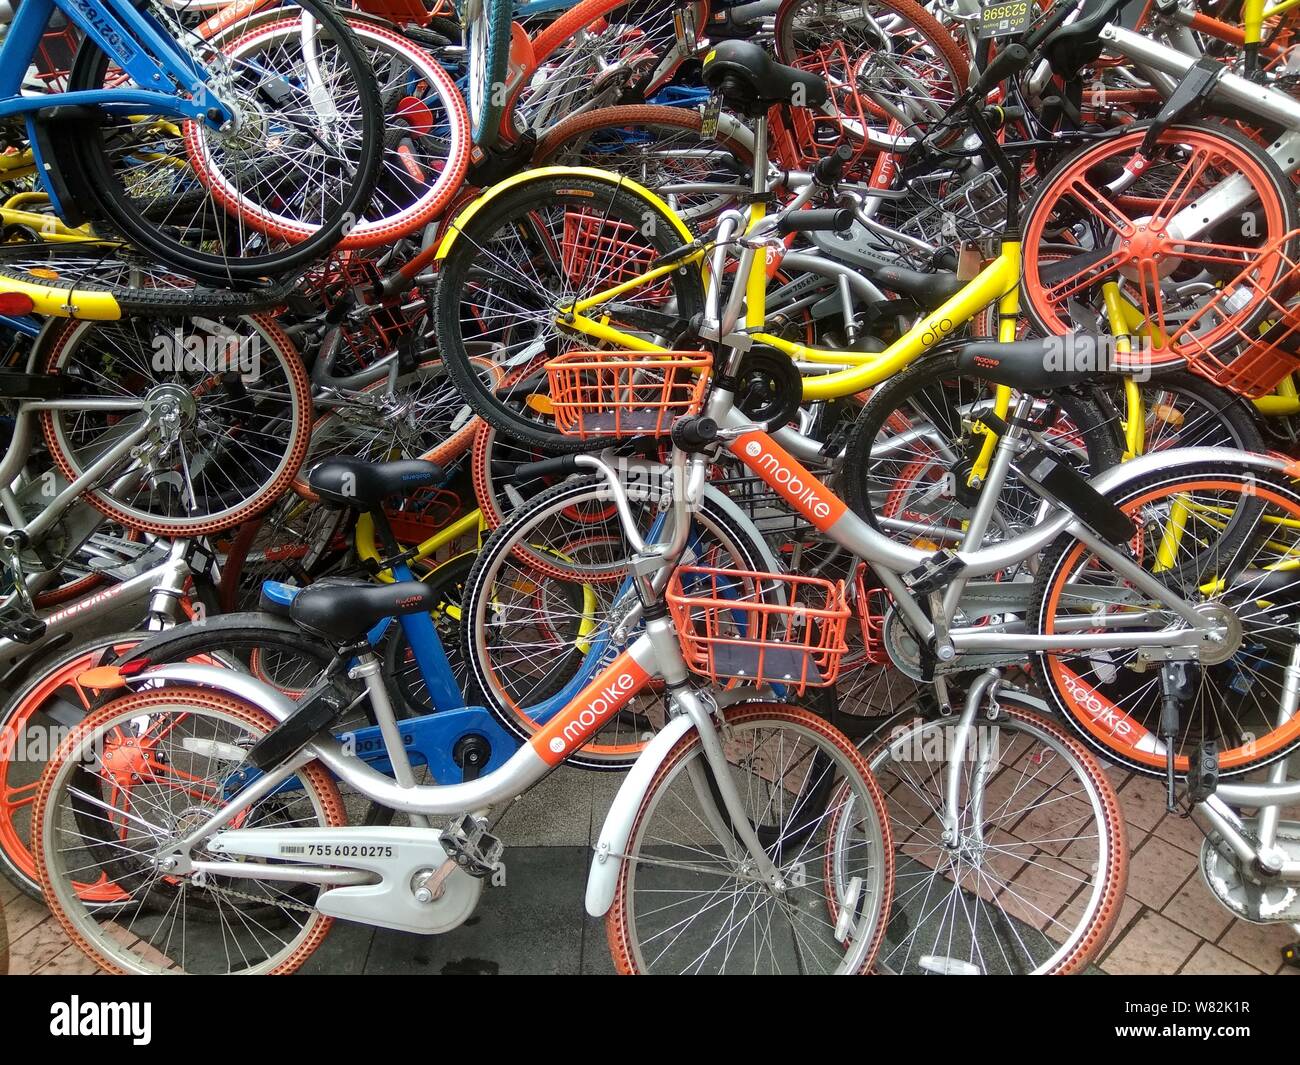 Archivo-bicicletas dañadas de los servicios de uso compartido de bicicletas  chinas Mobike (naranja), ofo (amarillo) y Xiaoming Danche o Xiaoming  bicicleta (azul) se amontona cerca Fotografía de stock - Alamy